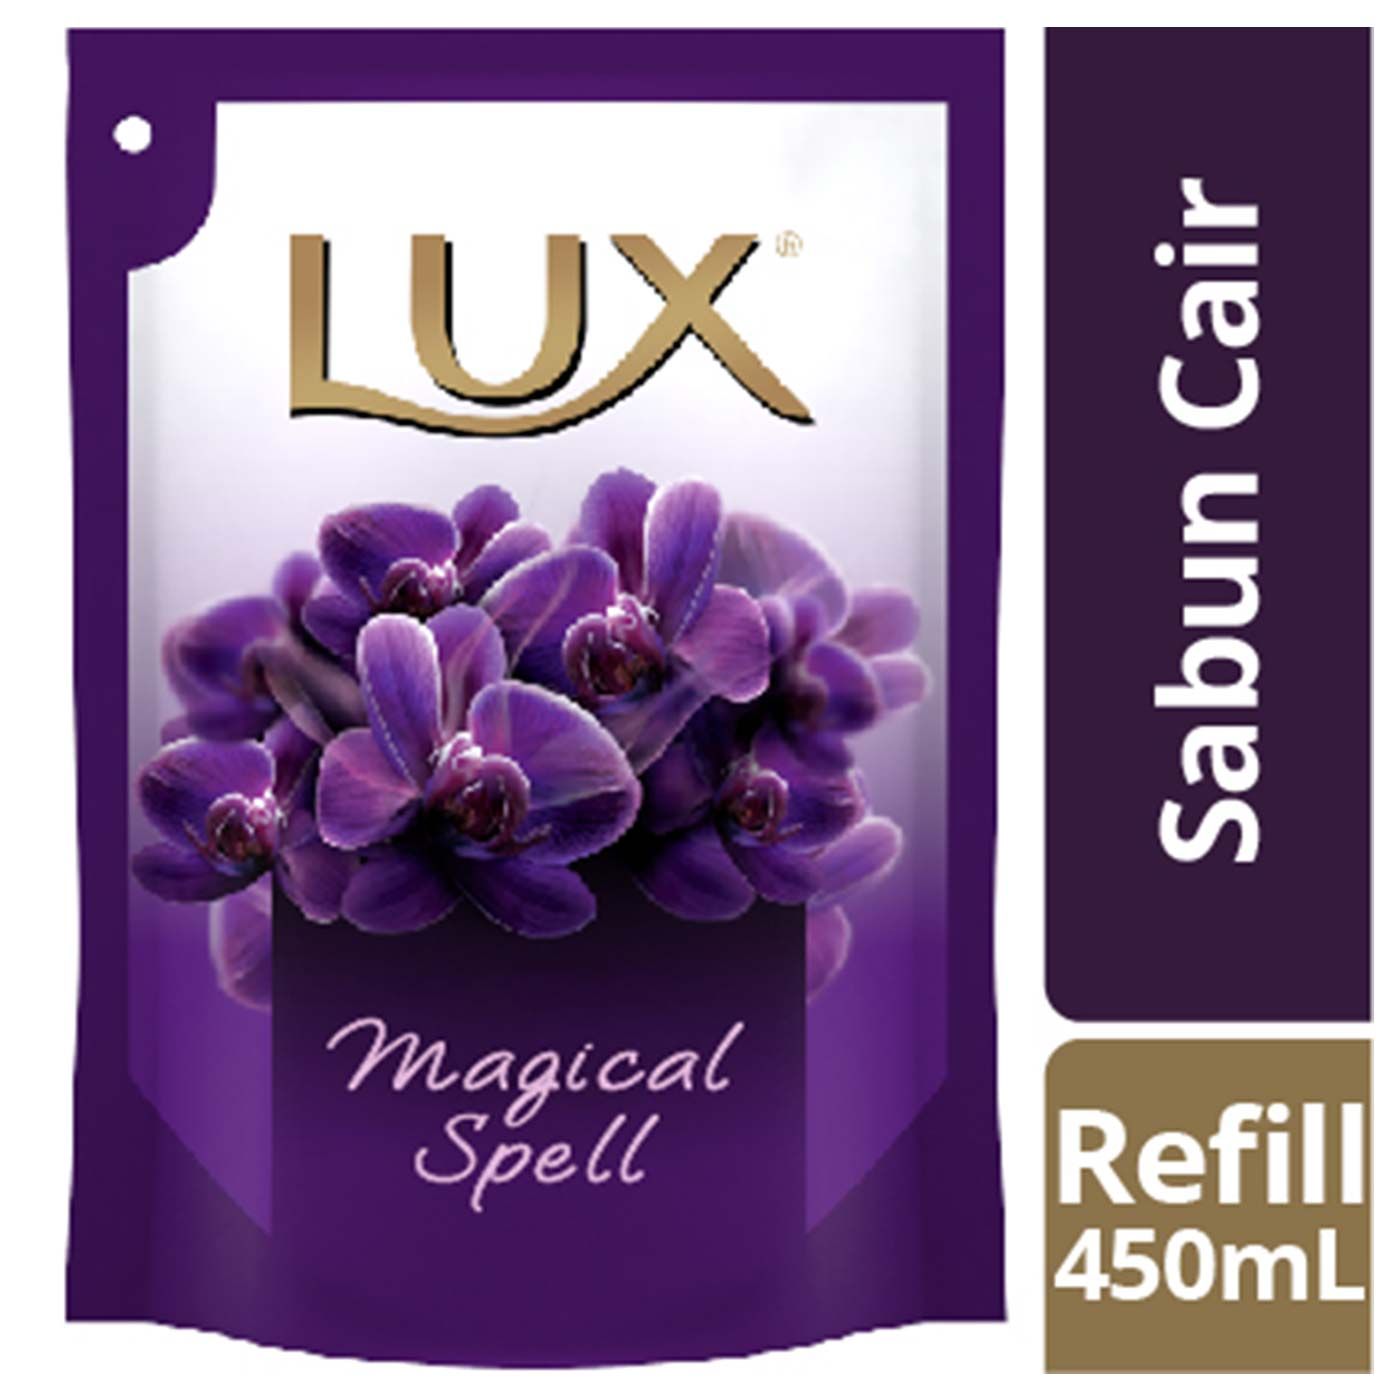 Lux Sabun Cair Purple Magical Spell Reffil 450ml - 1